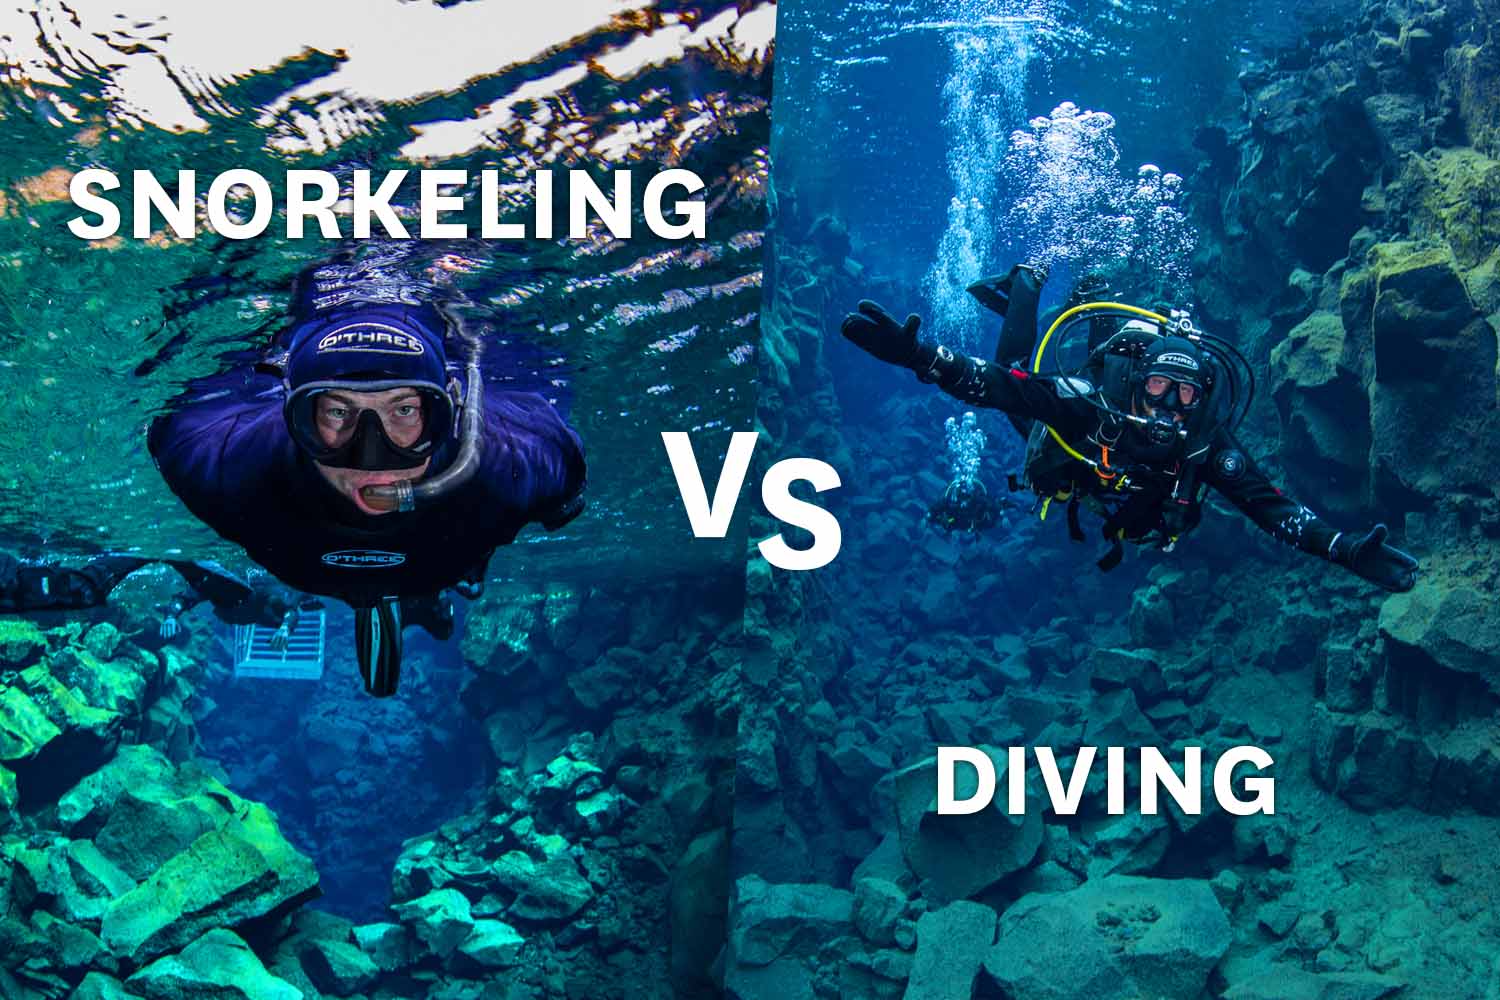 https://adventures.is/media/230913/snorkeling-vs-diving.jpg